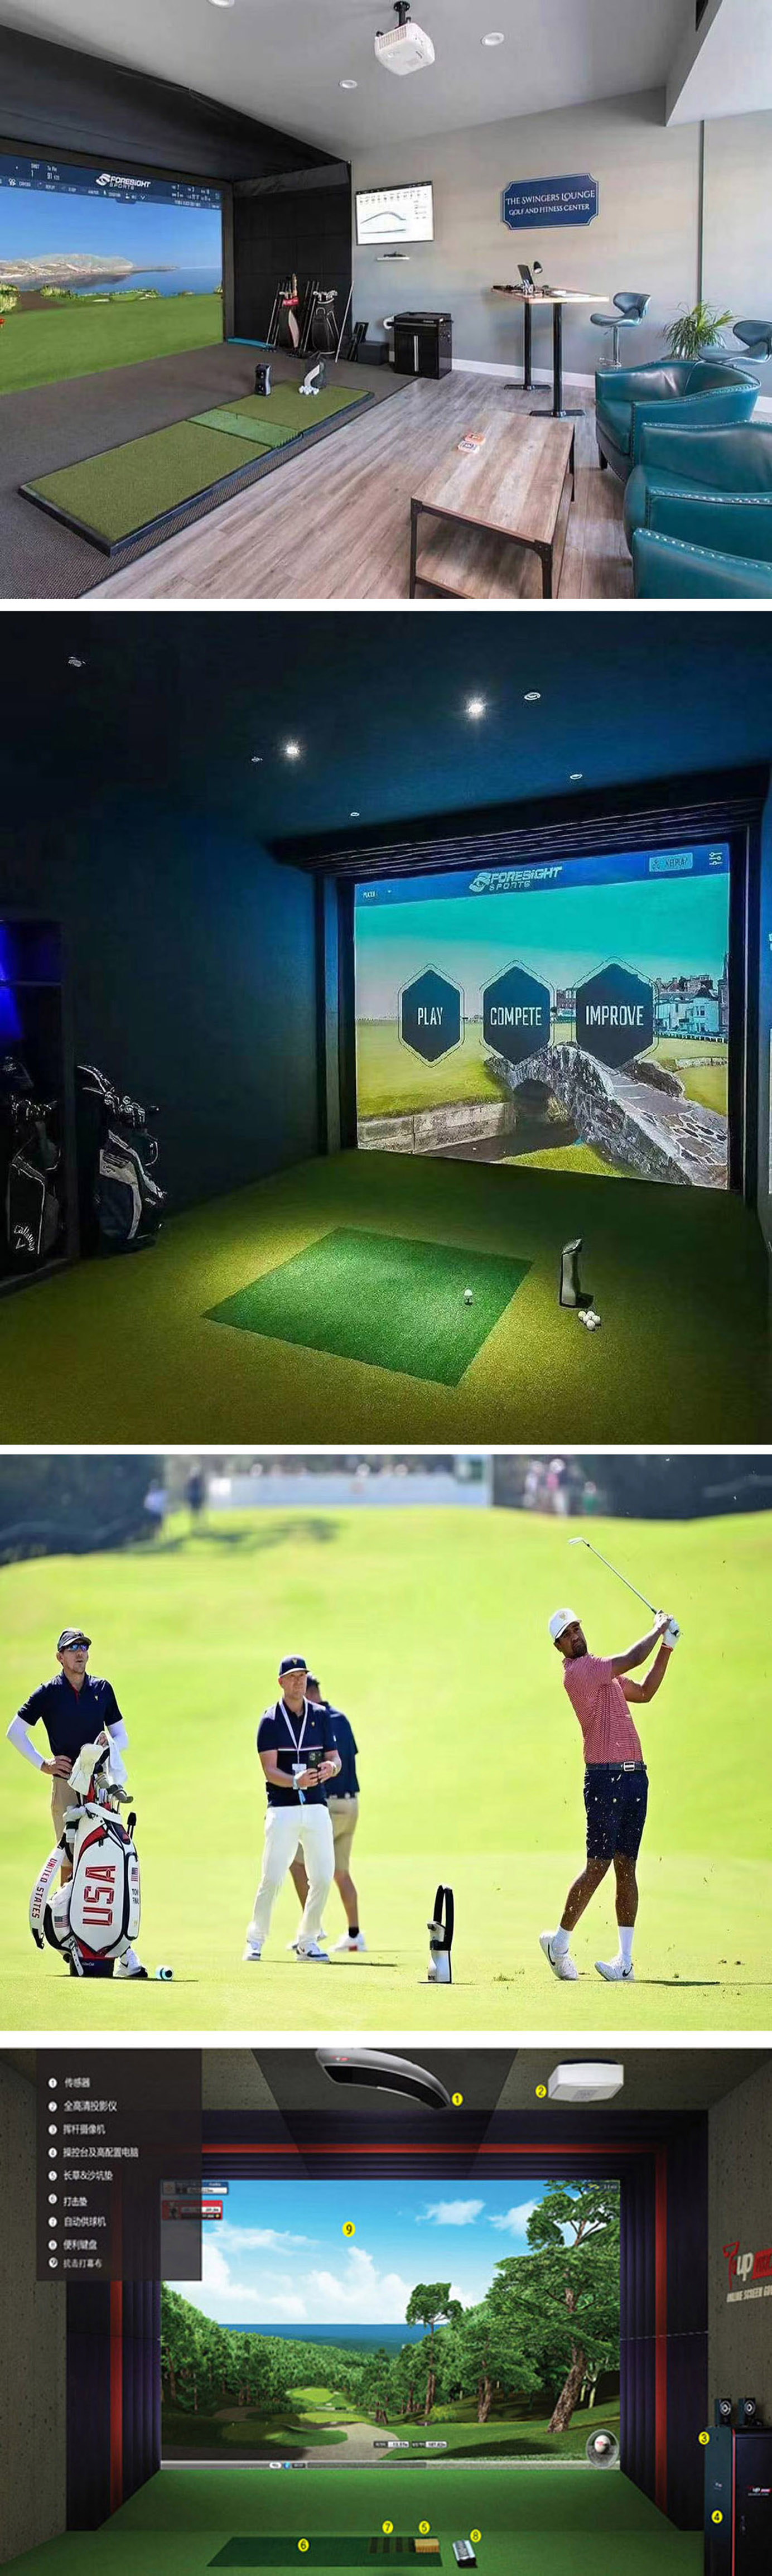 模拟室内高尔夫球场 1.jpg